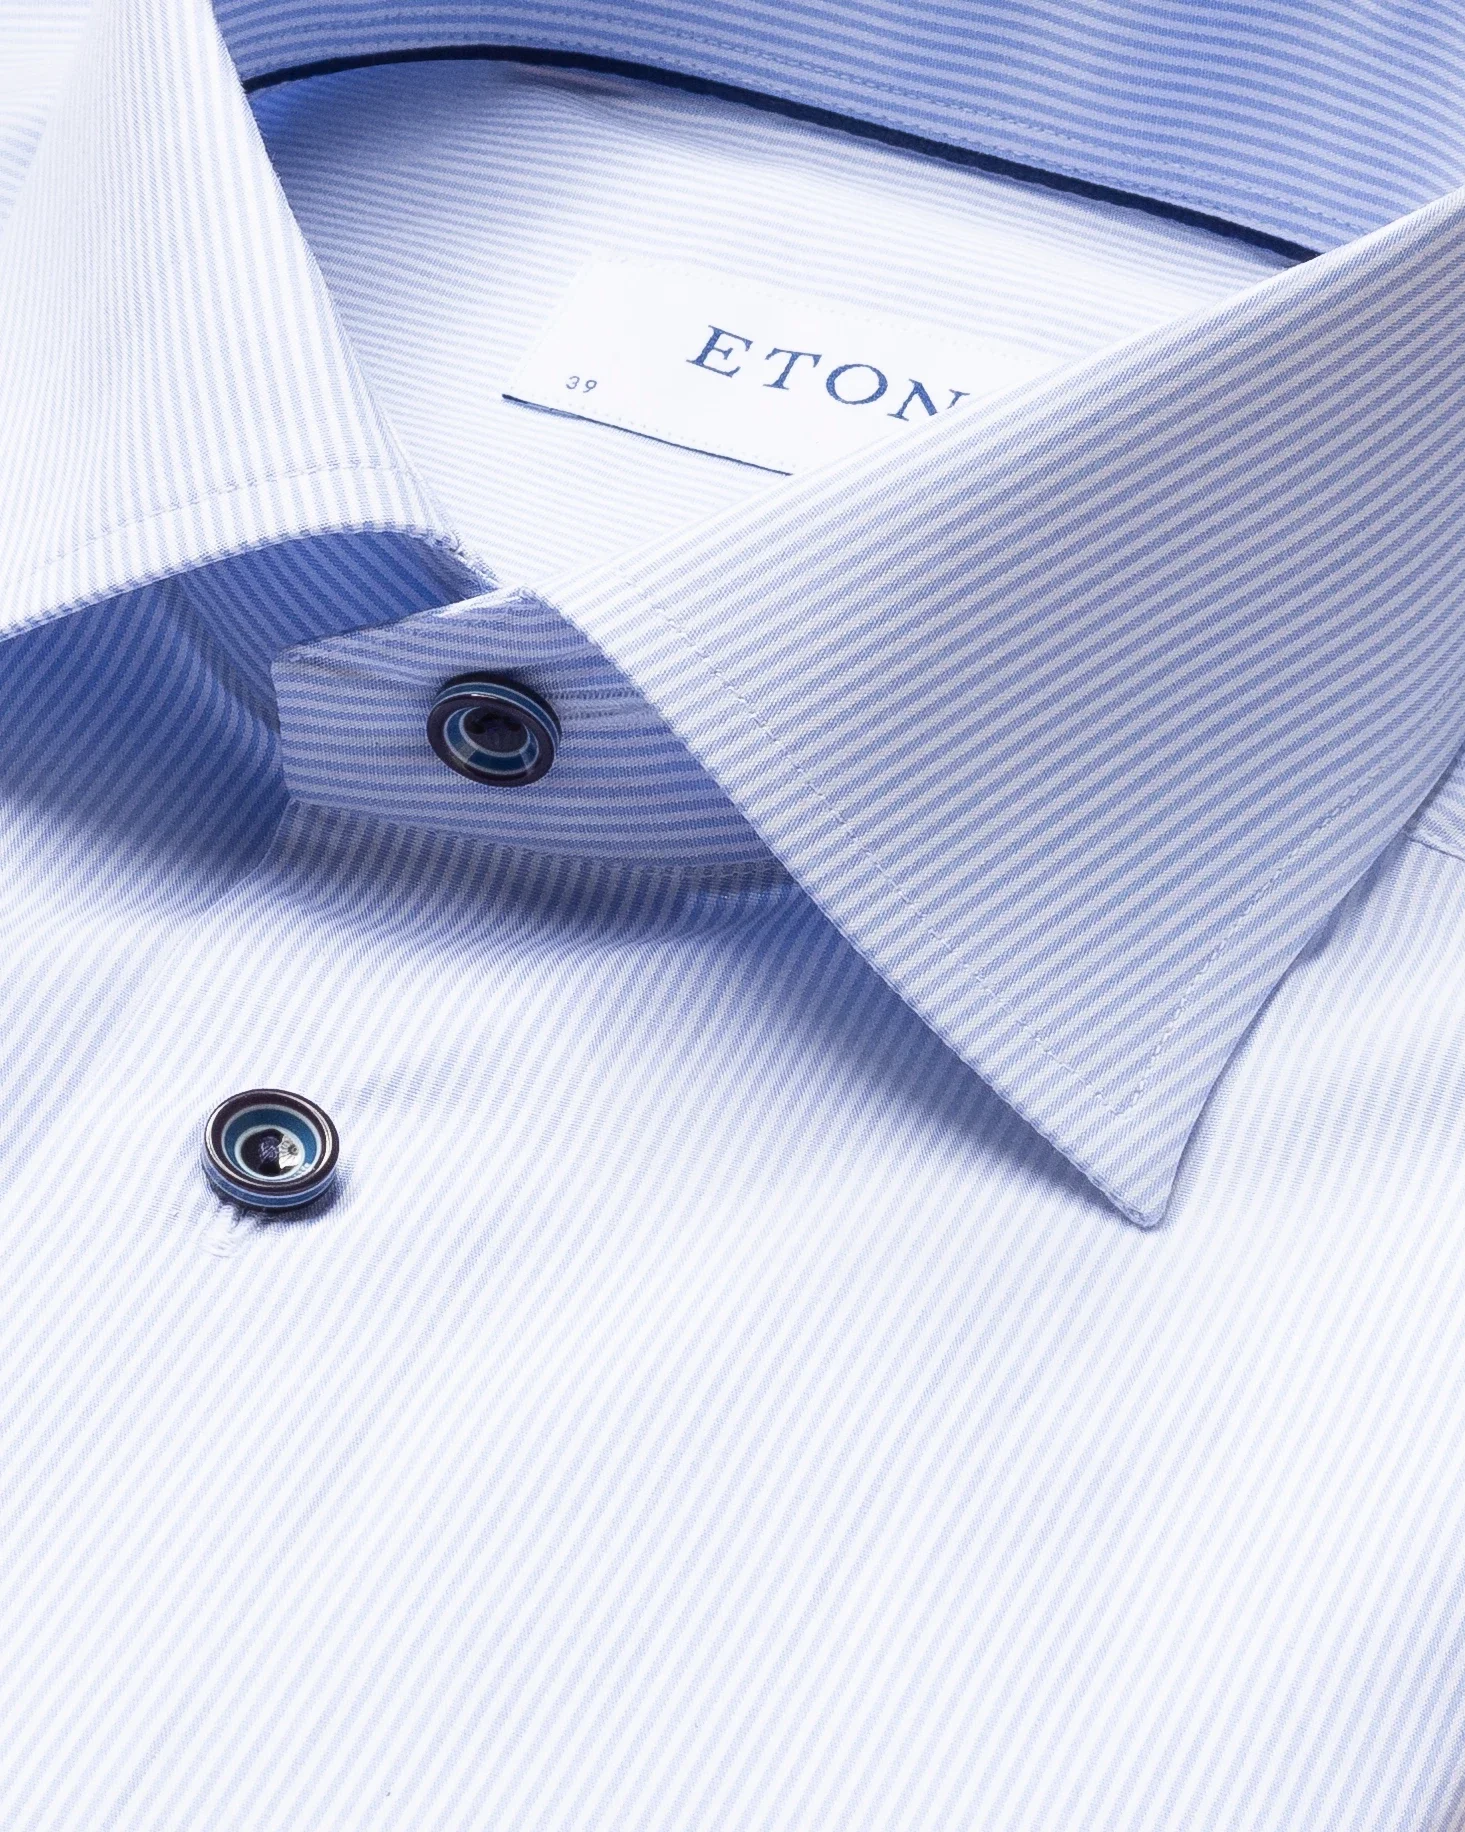 Eton - light blue striped poplin shirt navy buttons